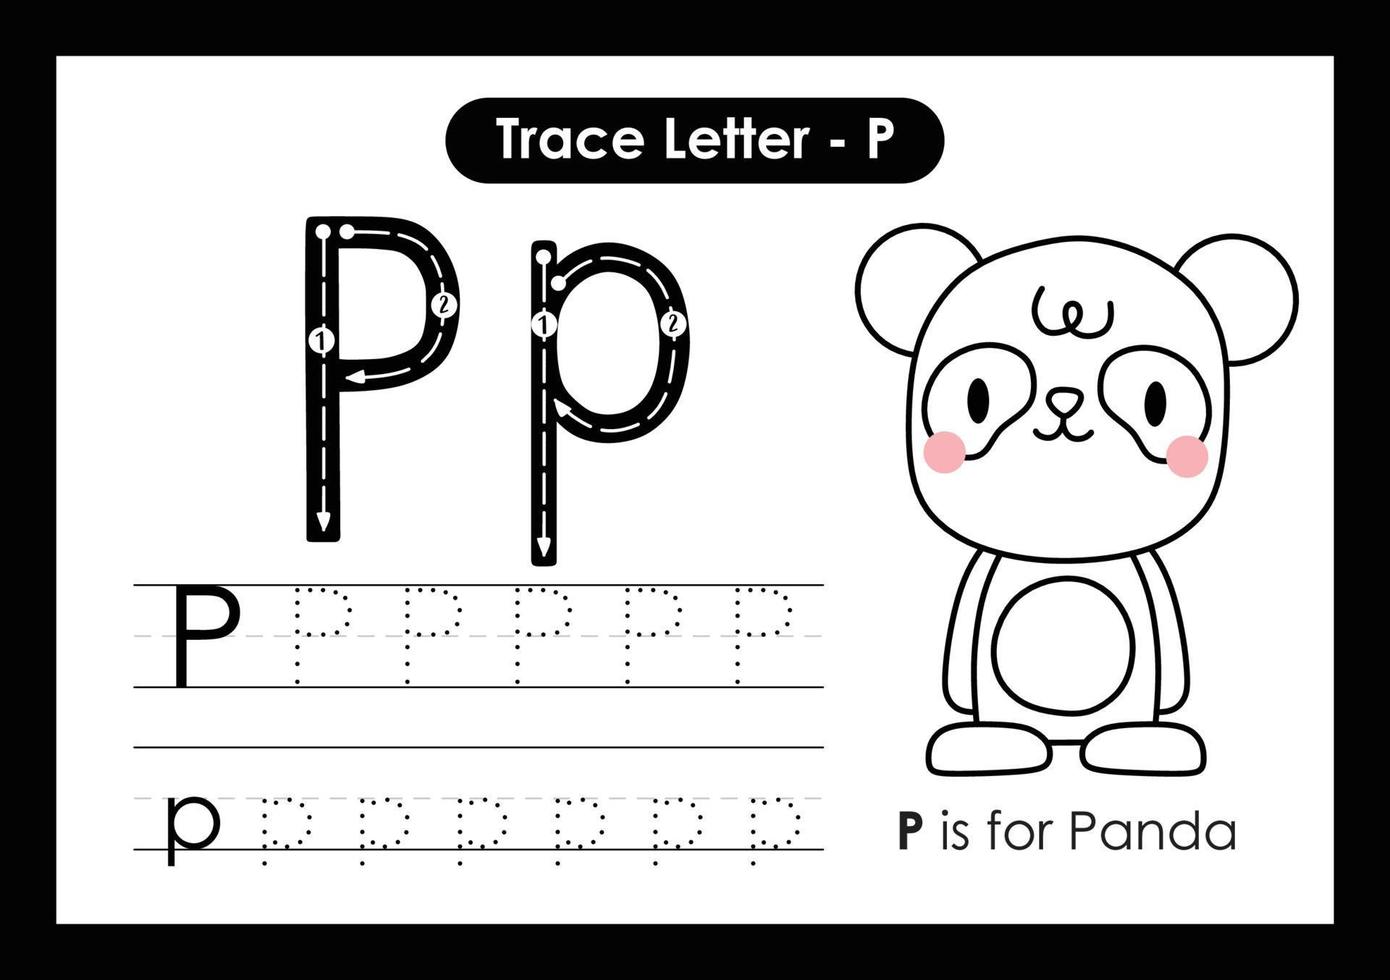 hoja de trabajo preescolar de la letra a a la z del alfabeto con la letra p panda vector